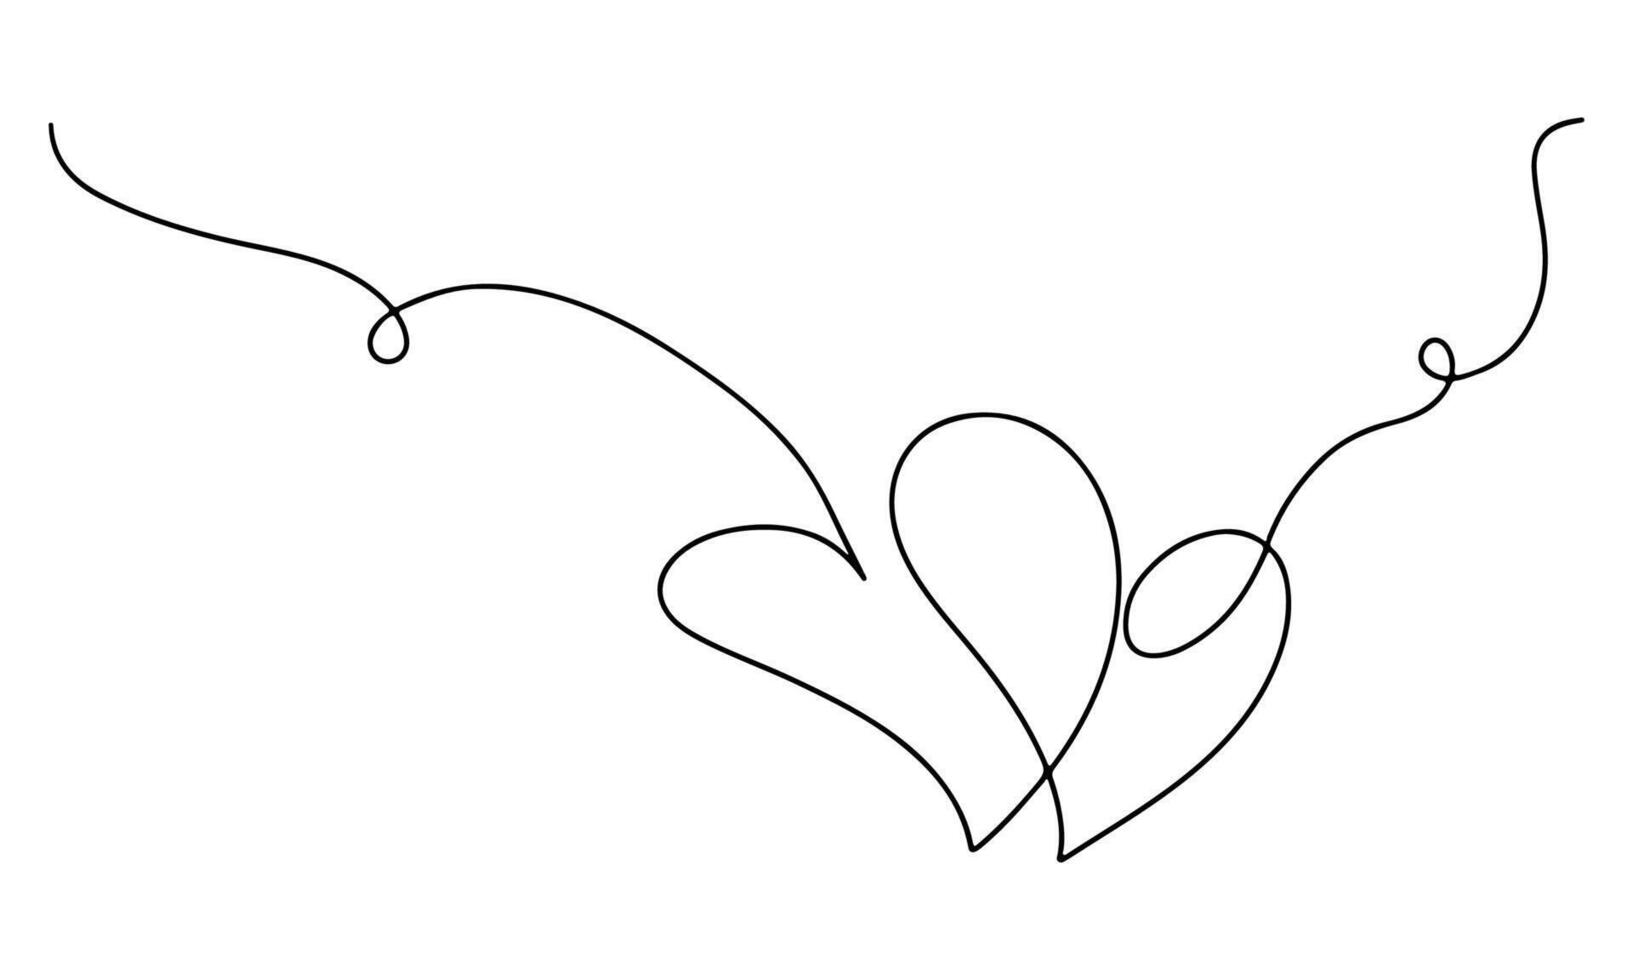 deux cœurs dans Célibataire continu doubler. main tiré style. vecteur illustration isolé sur blanche.